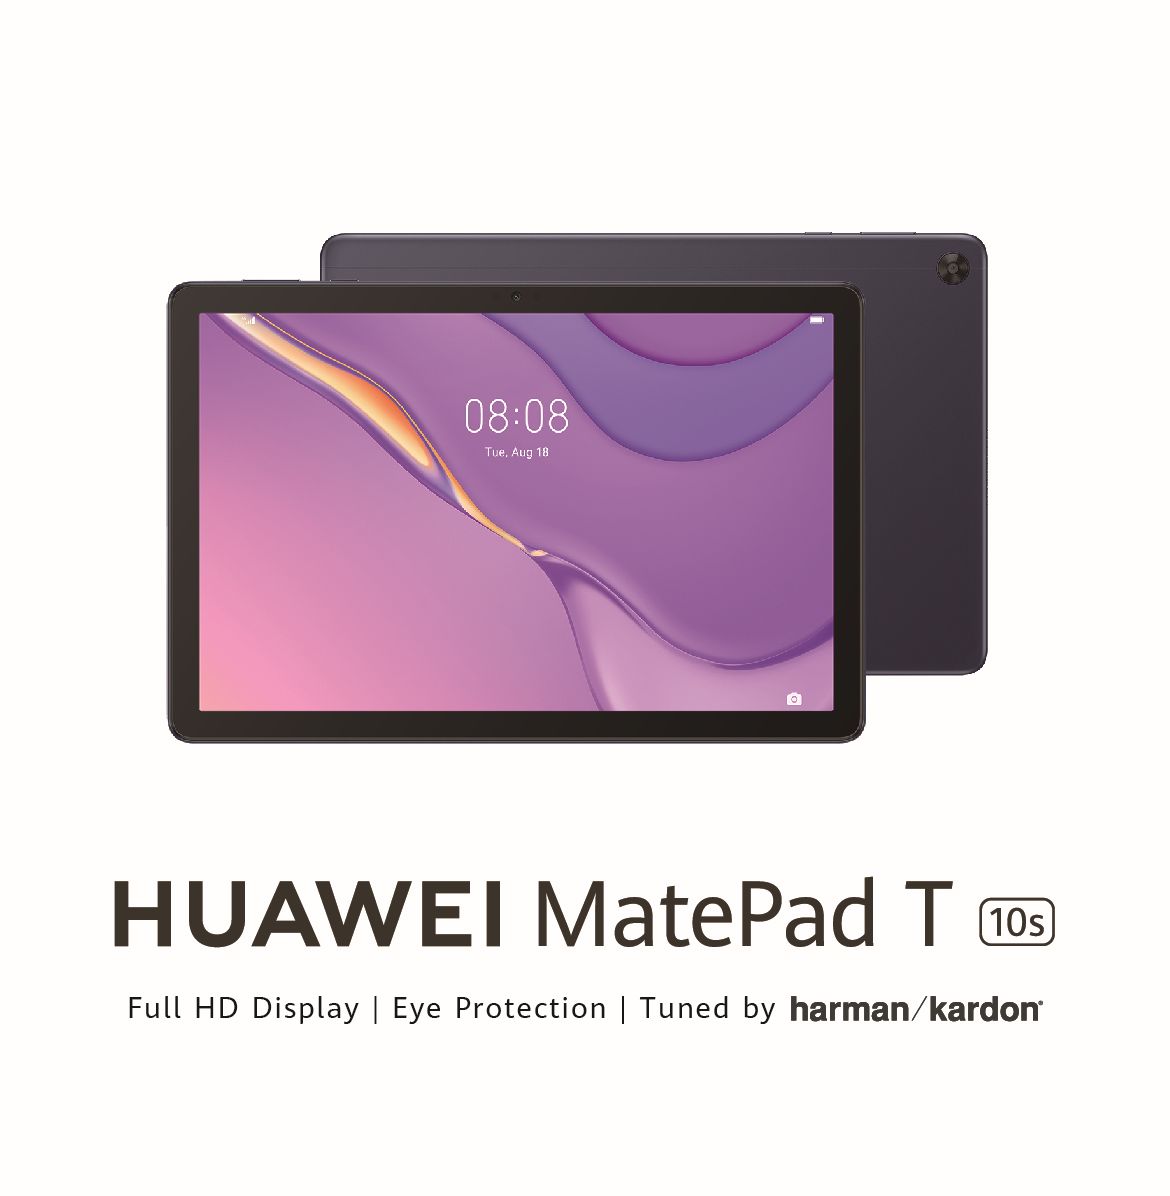 புதிய Huawei MatePad T10s: பரந்த பொழுதுபோக்கு அம்சங்களுடன் திரையரங்கே உங்களுக்கு அருகில்